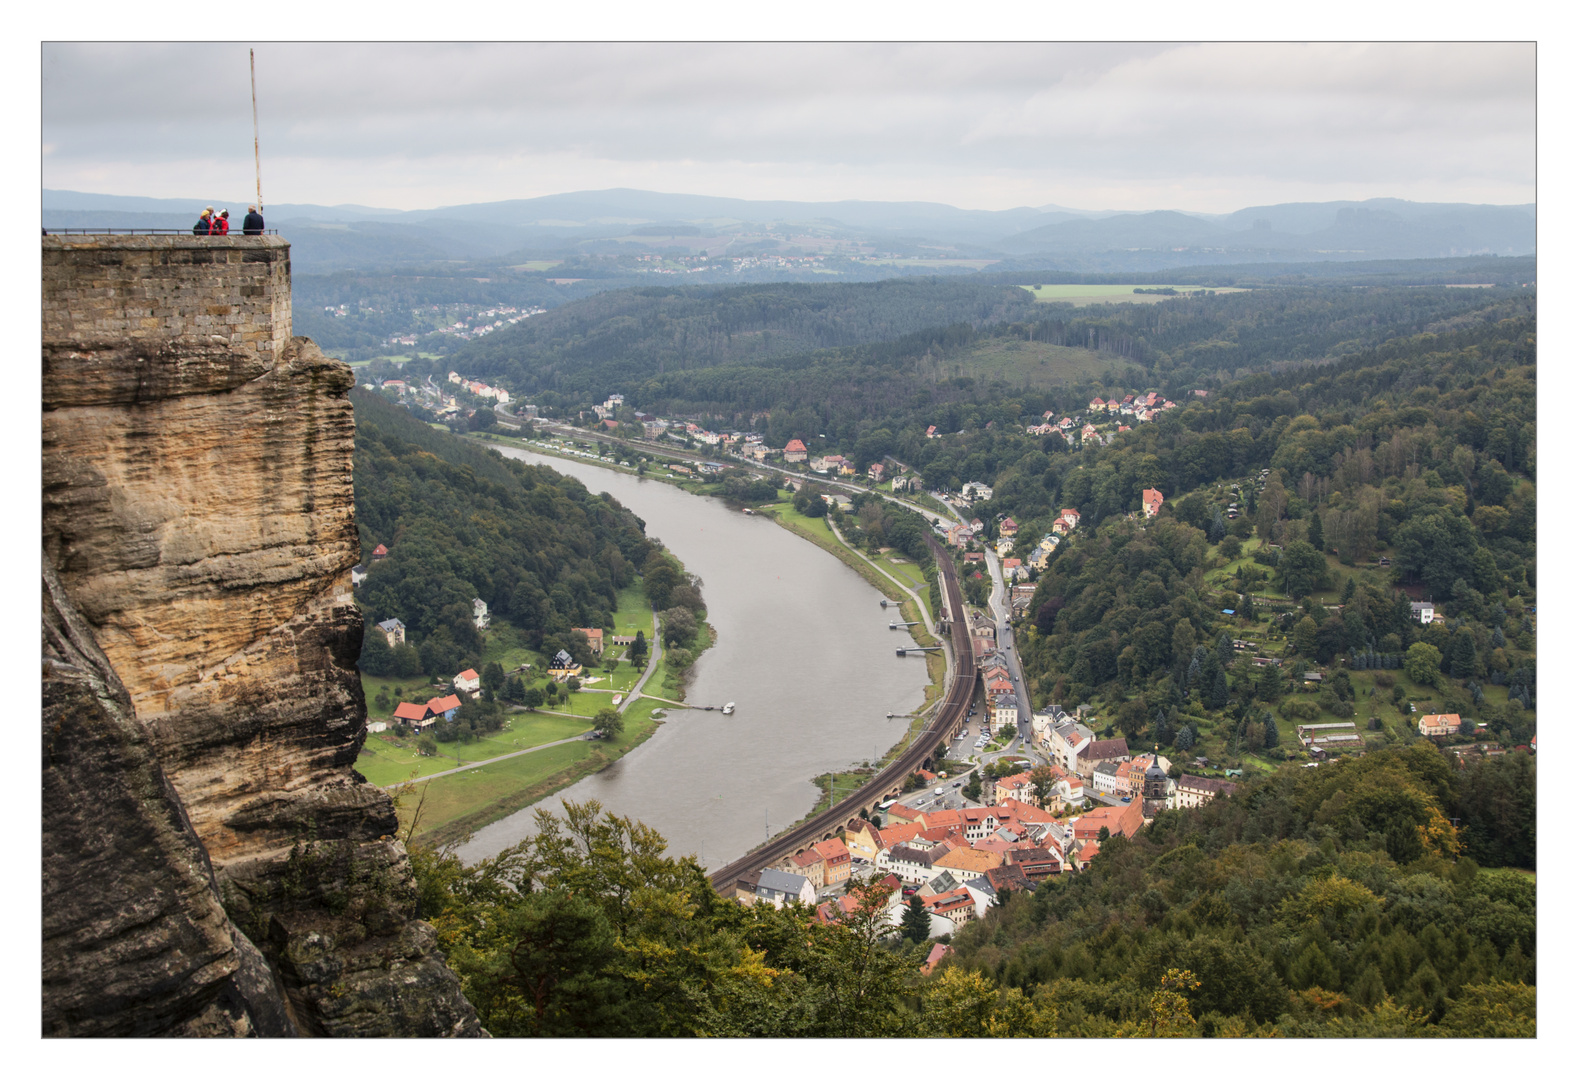 Blick von der Festung Königstein